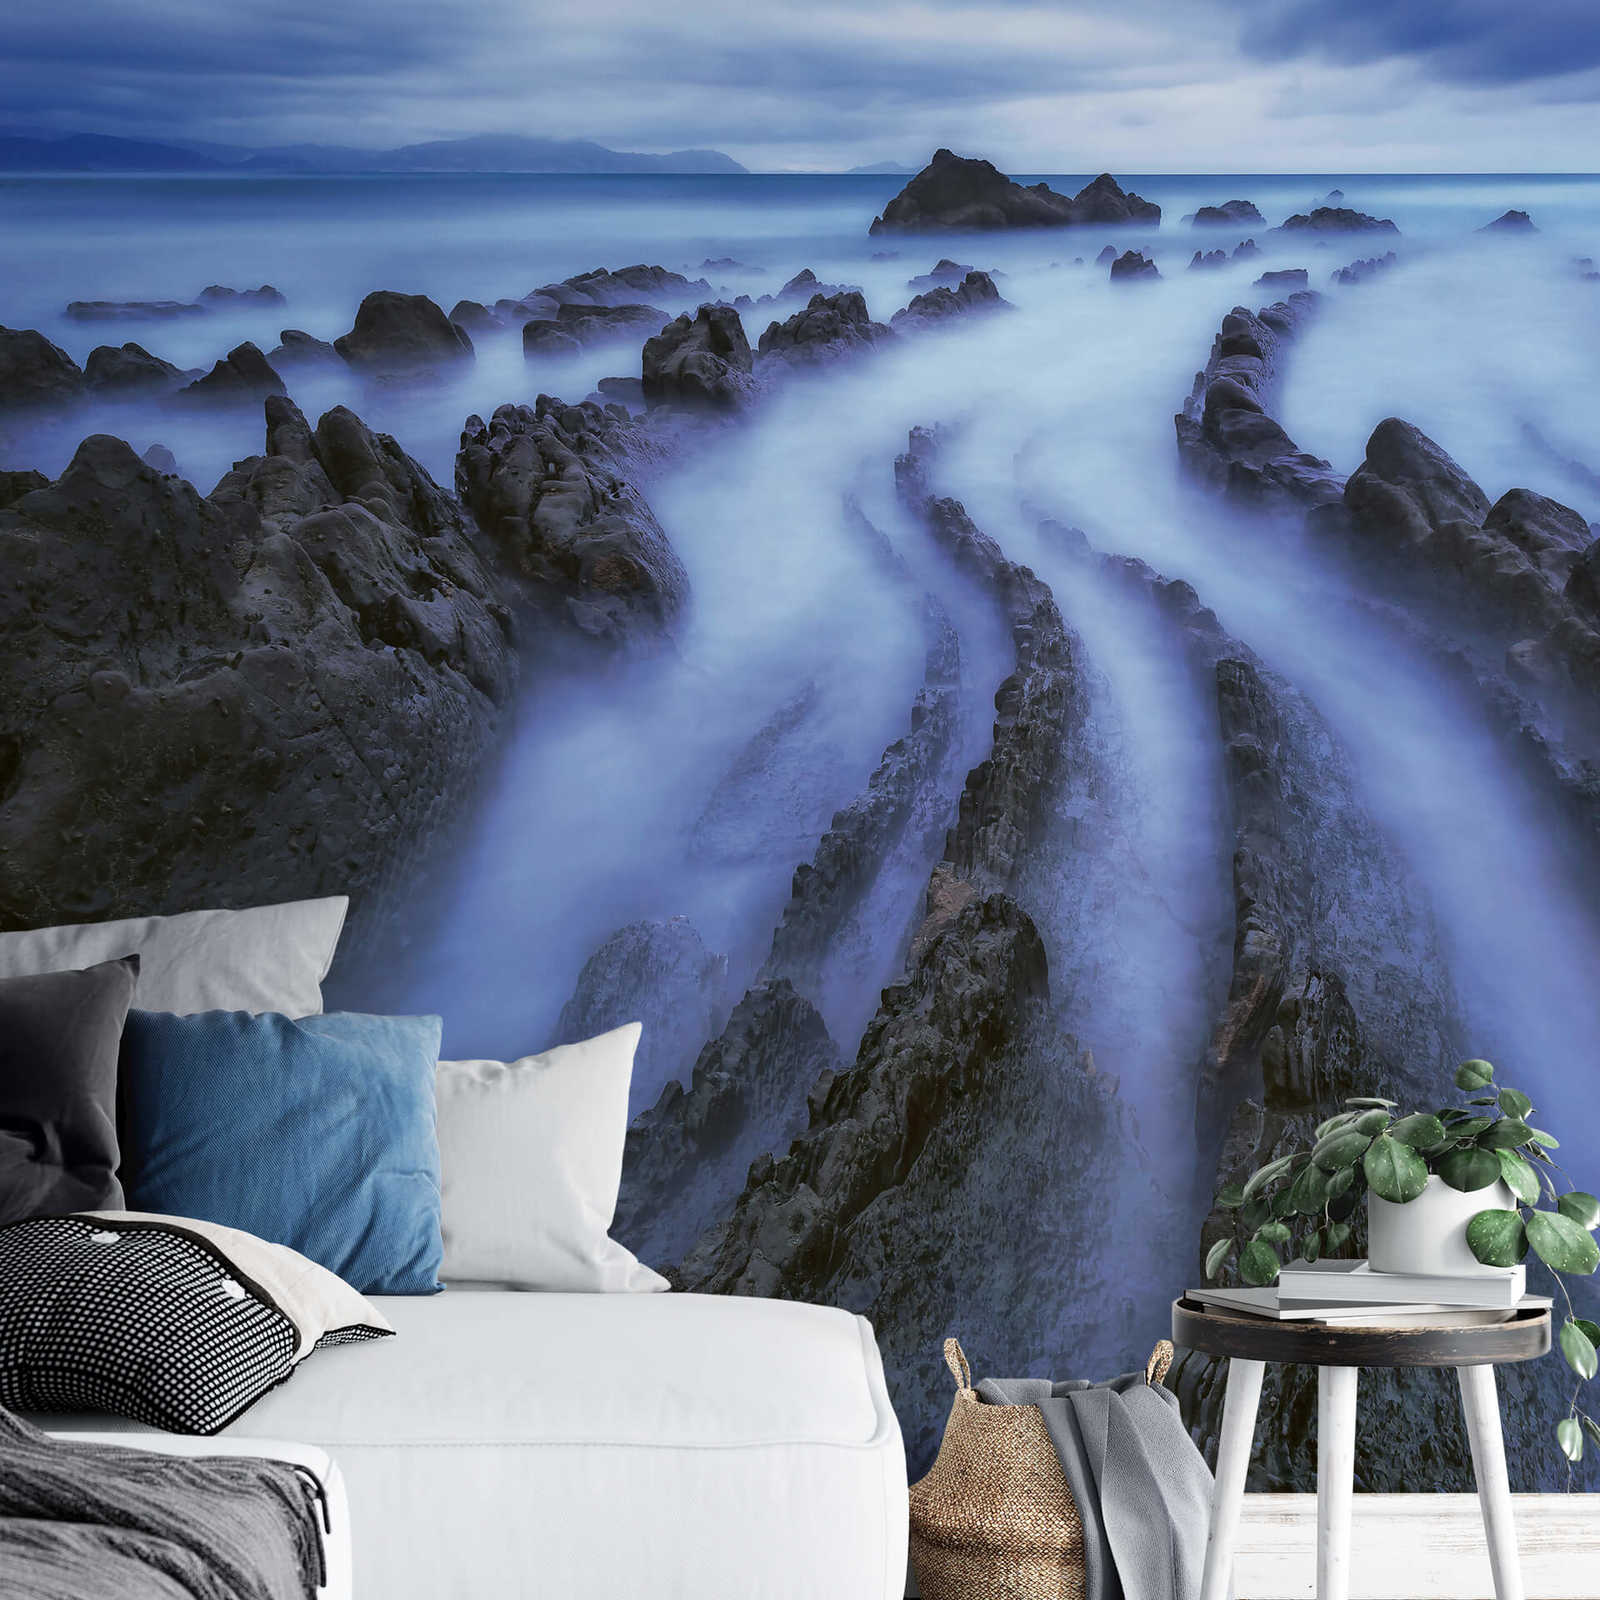             Papel Pintado Mar con Niebla - Azul, Gris, Blanco
        